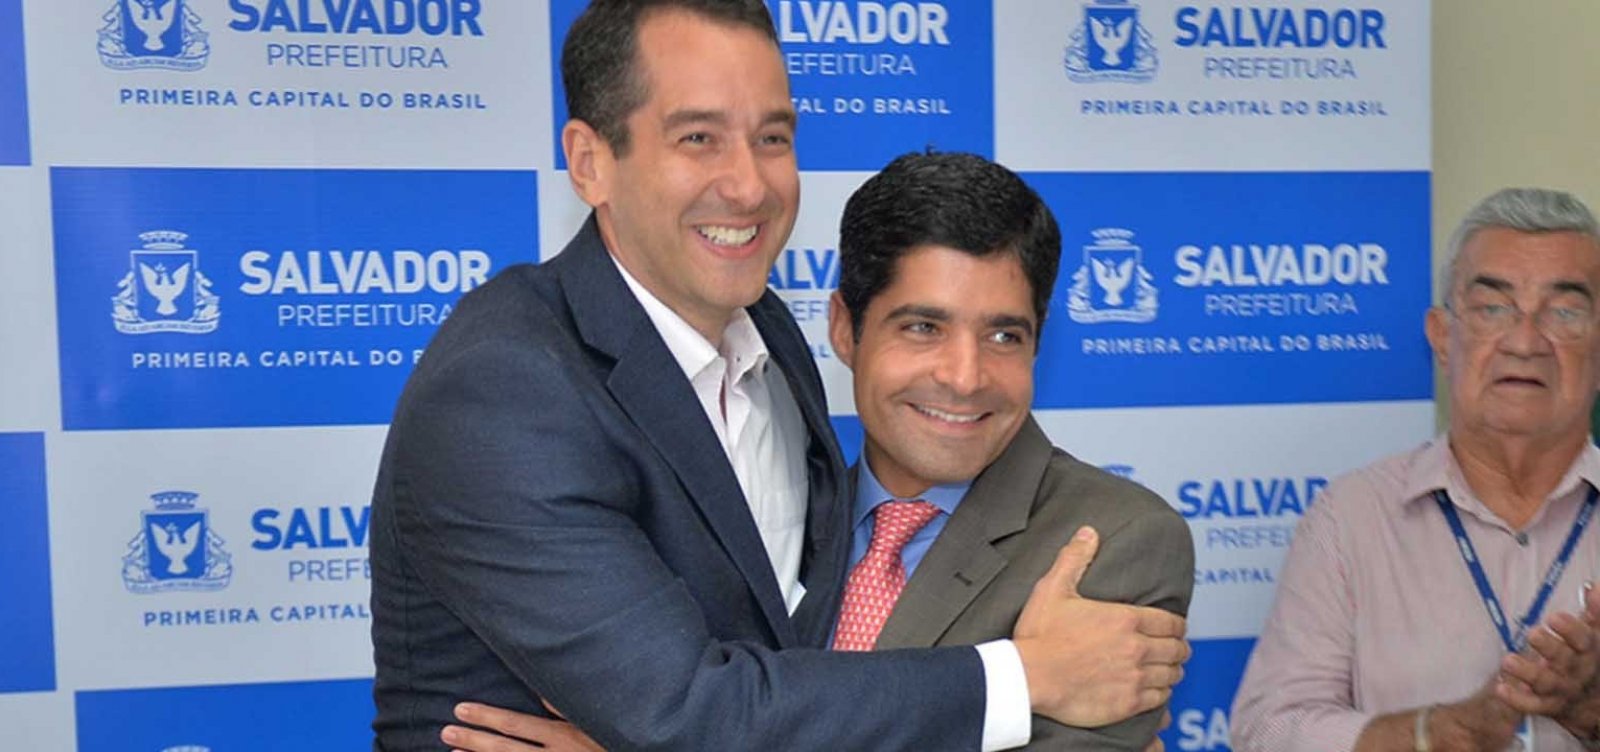 Boca Quente: conheça o novo prefeito de Salvador 